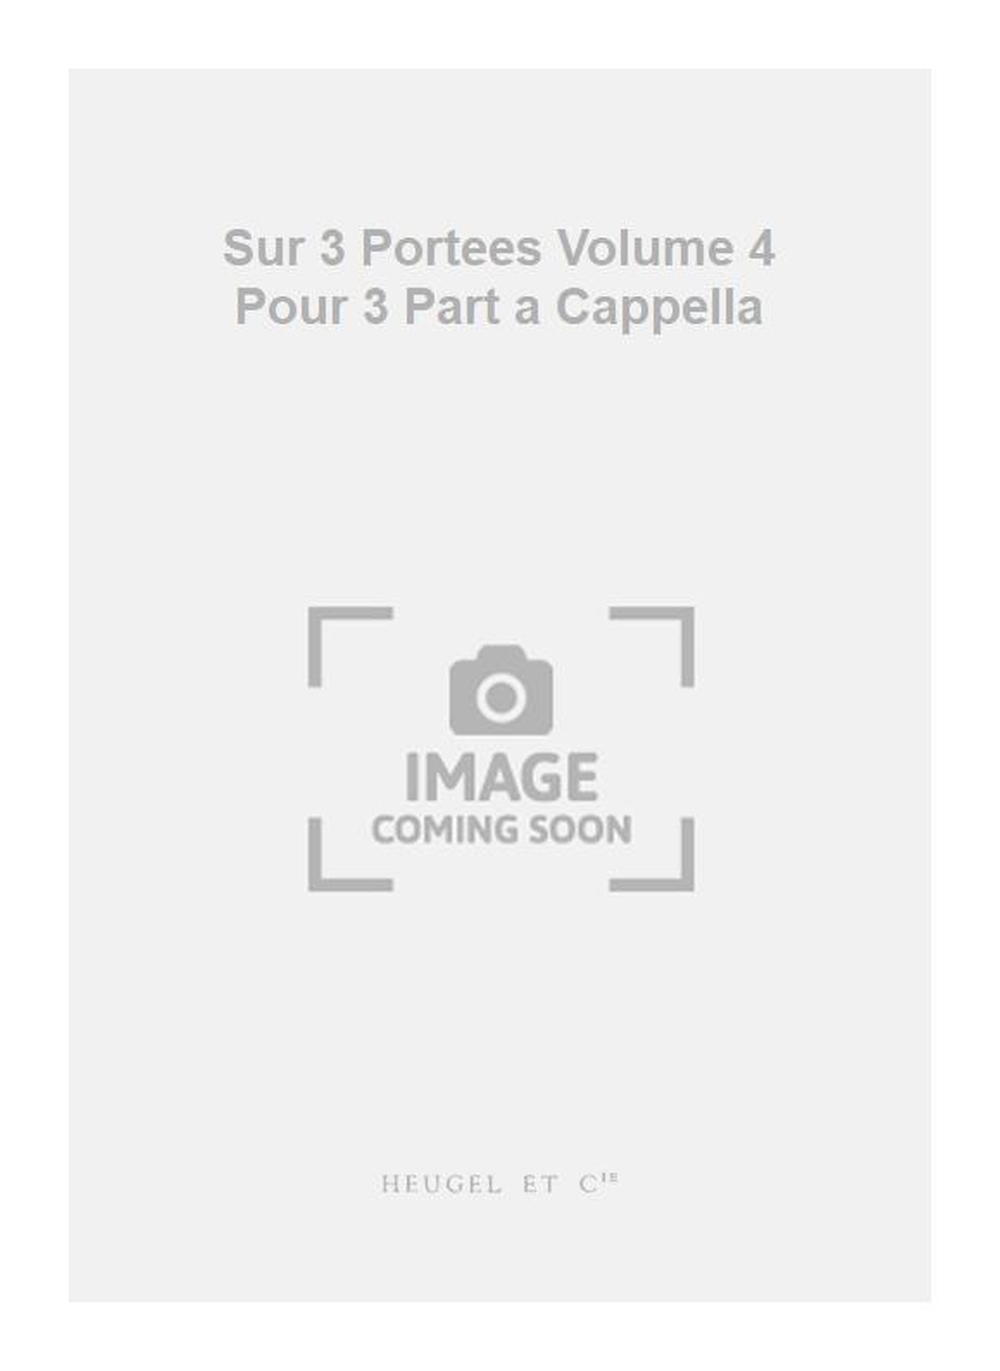 Georges Aubanel: Sur 3 Portees Volume 4 Pour 3 Part a Cappella